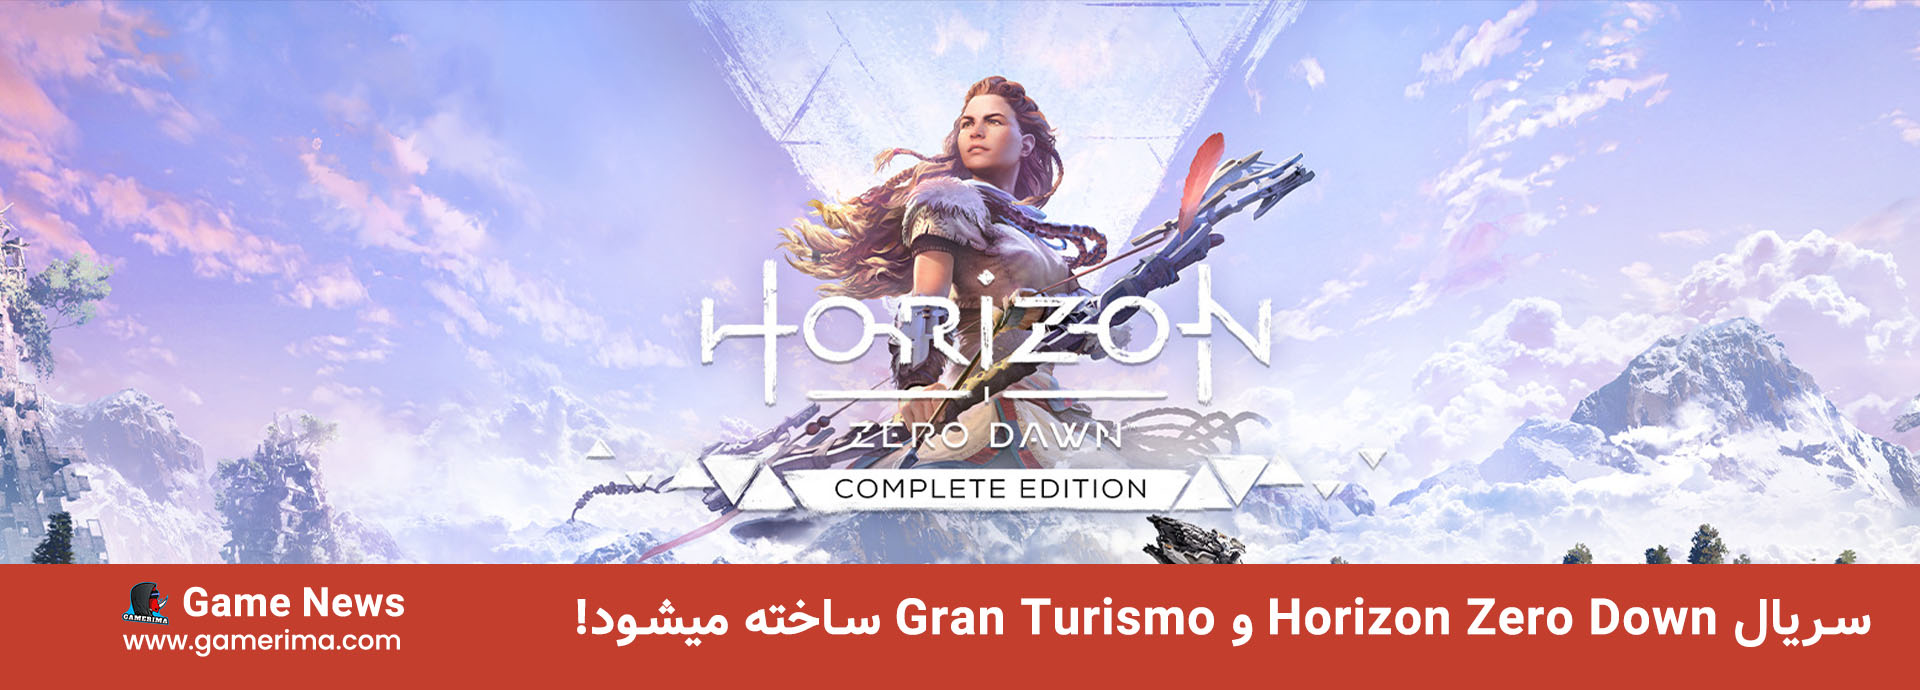 سریال Horizon Zero Down و Gran Turismo ساخته میشود!